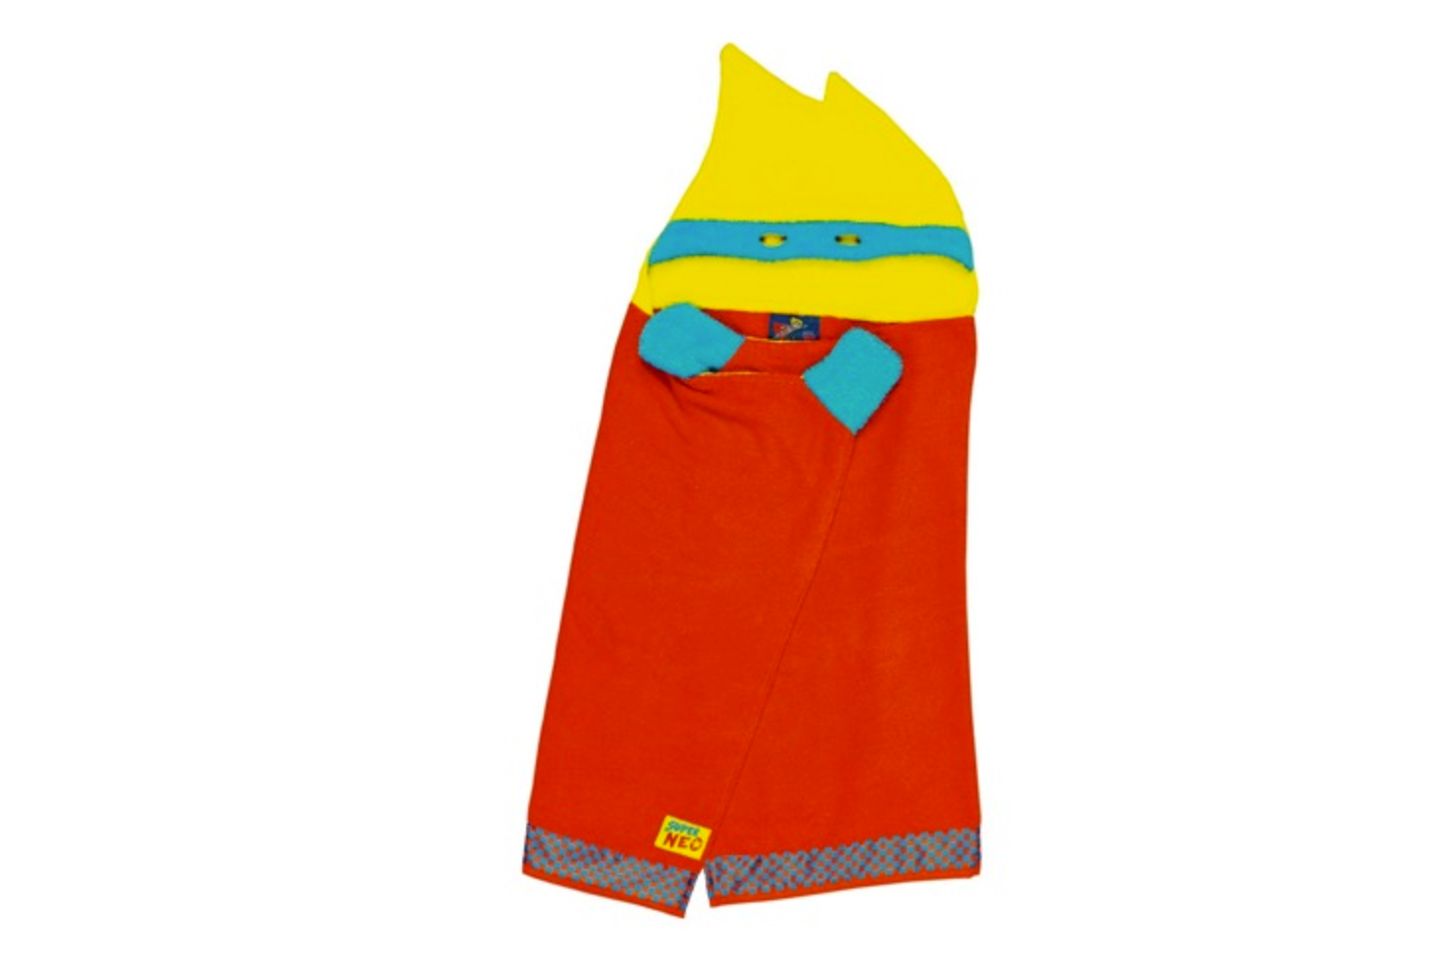 Für kleine Superhelden ist dieses Handtuch der Hit. Mit tollen Farben und sogar Gucklöchern wird dieses Handtuch zum Superhelden-Cape! Gesehen unter www.nostalgieimkinderzimmer.de für 29,95 Euro.